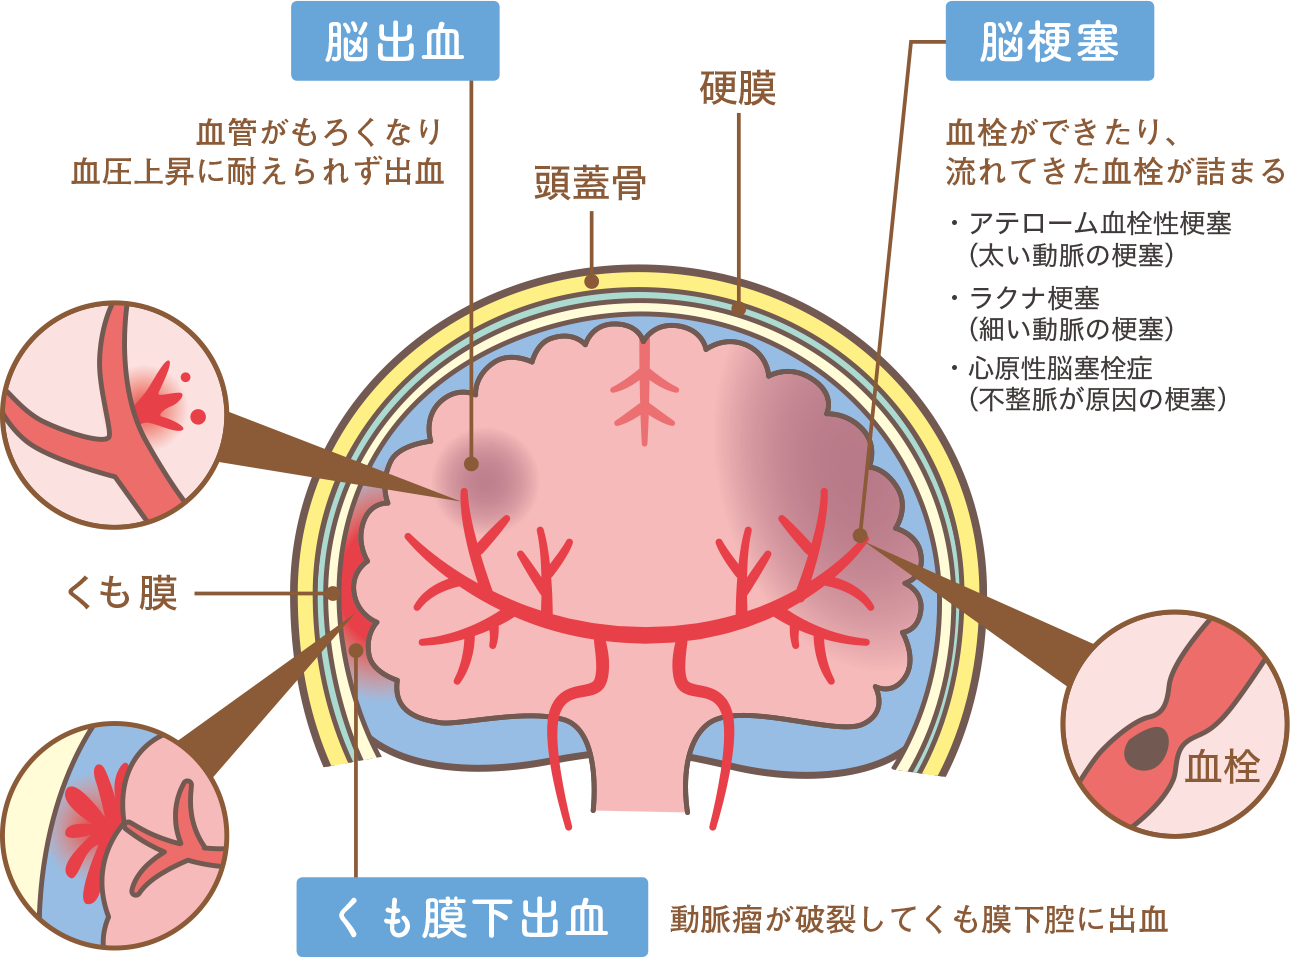 脳出血：血管がもろくなり血圧上昇にたえられず出血　脳梗塞：血栓できたり、流れてきた血液が詰まる　くも膜下出血：動脈瘤が破裂してくも膜下腔に出血